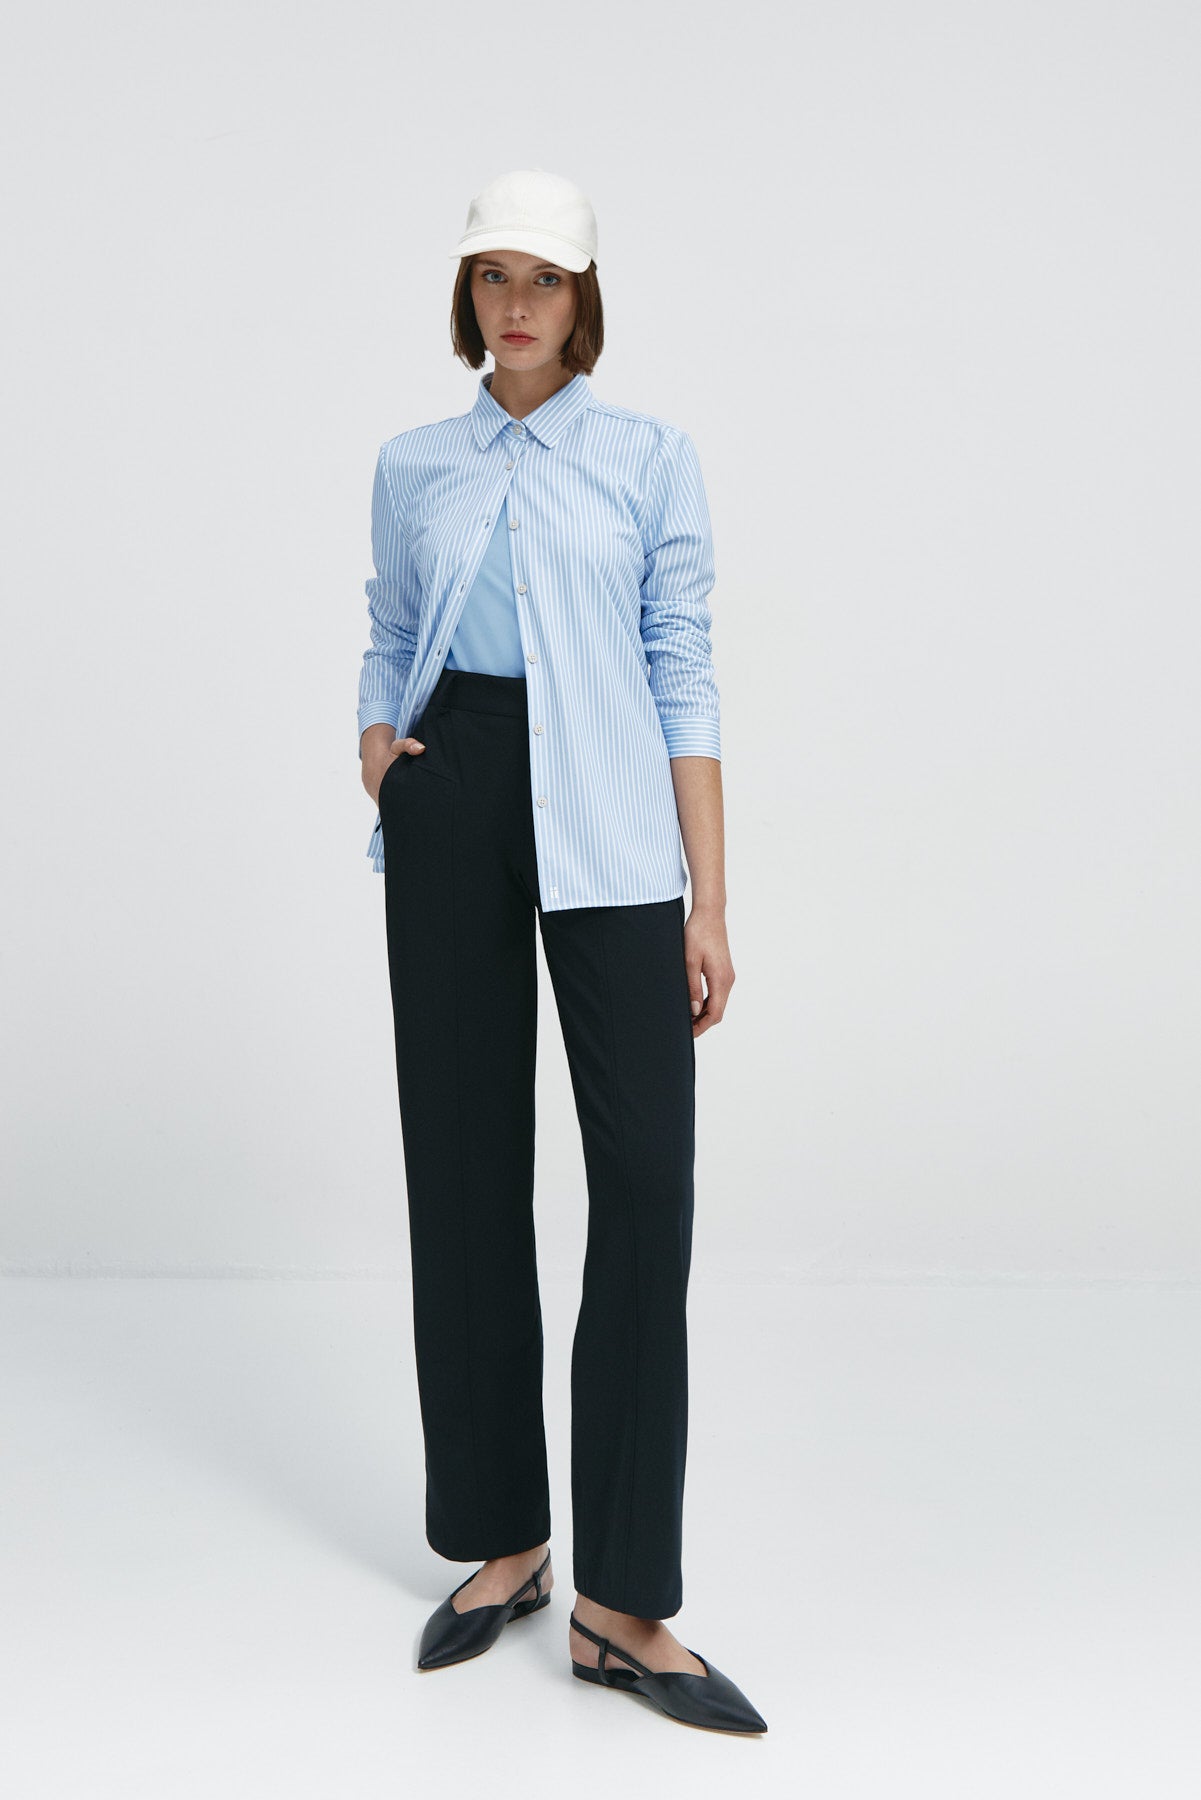 Top para mujer sin mangas con escote pico en color azul niebla, básico y perfecto para el verano. Foto cuerpo entero